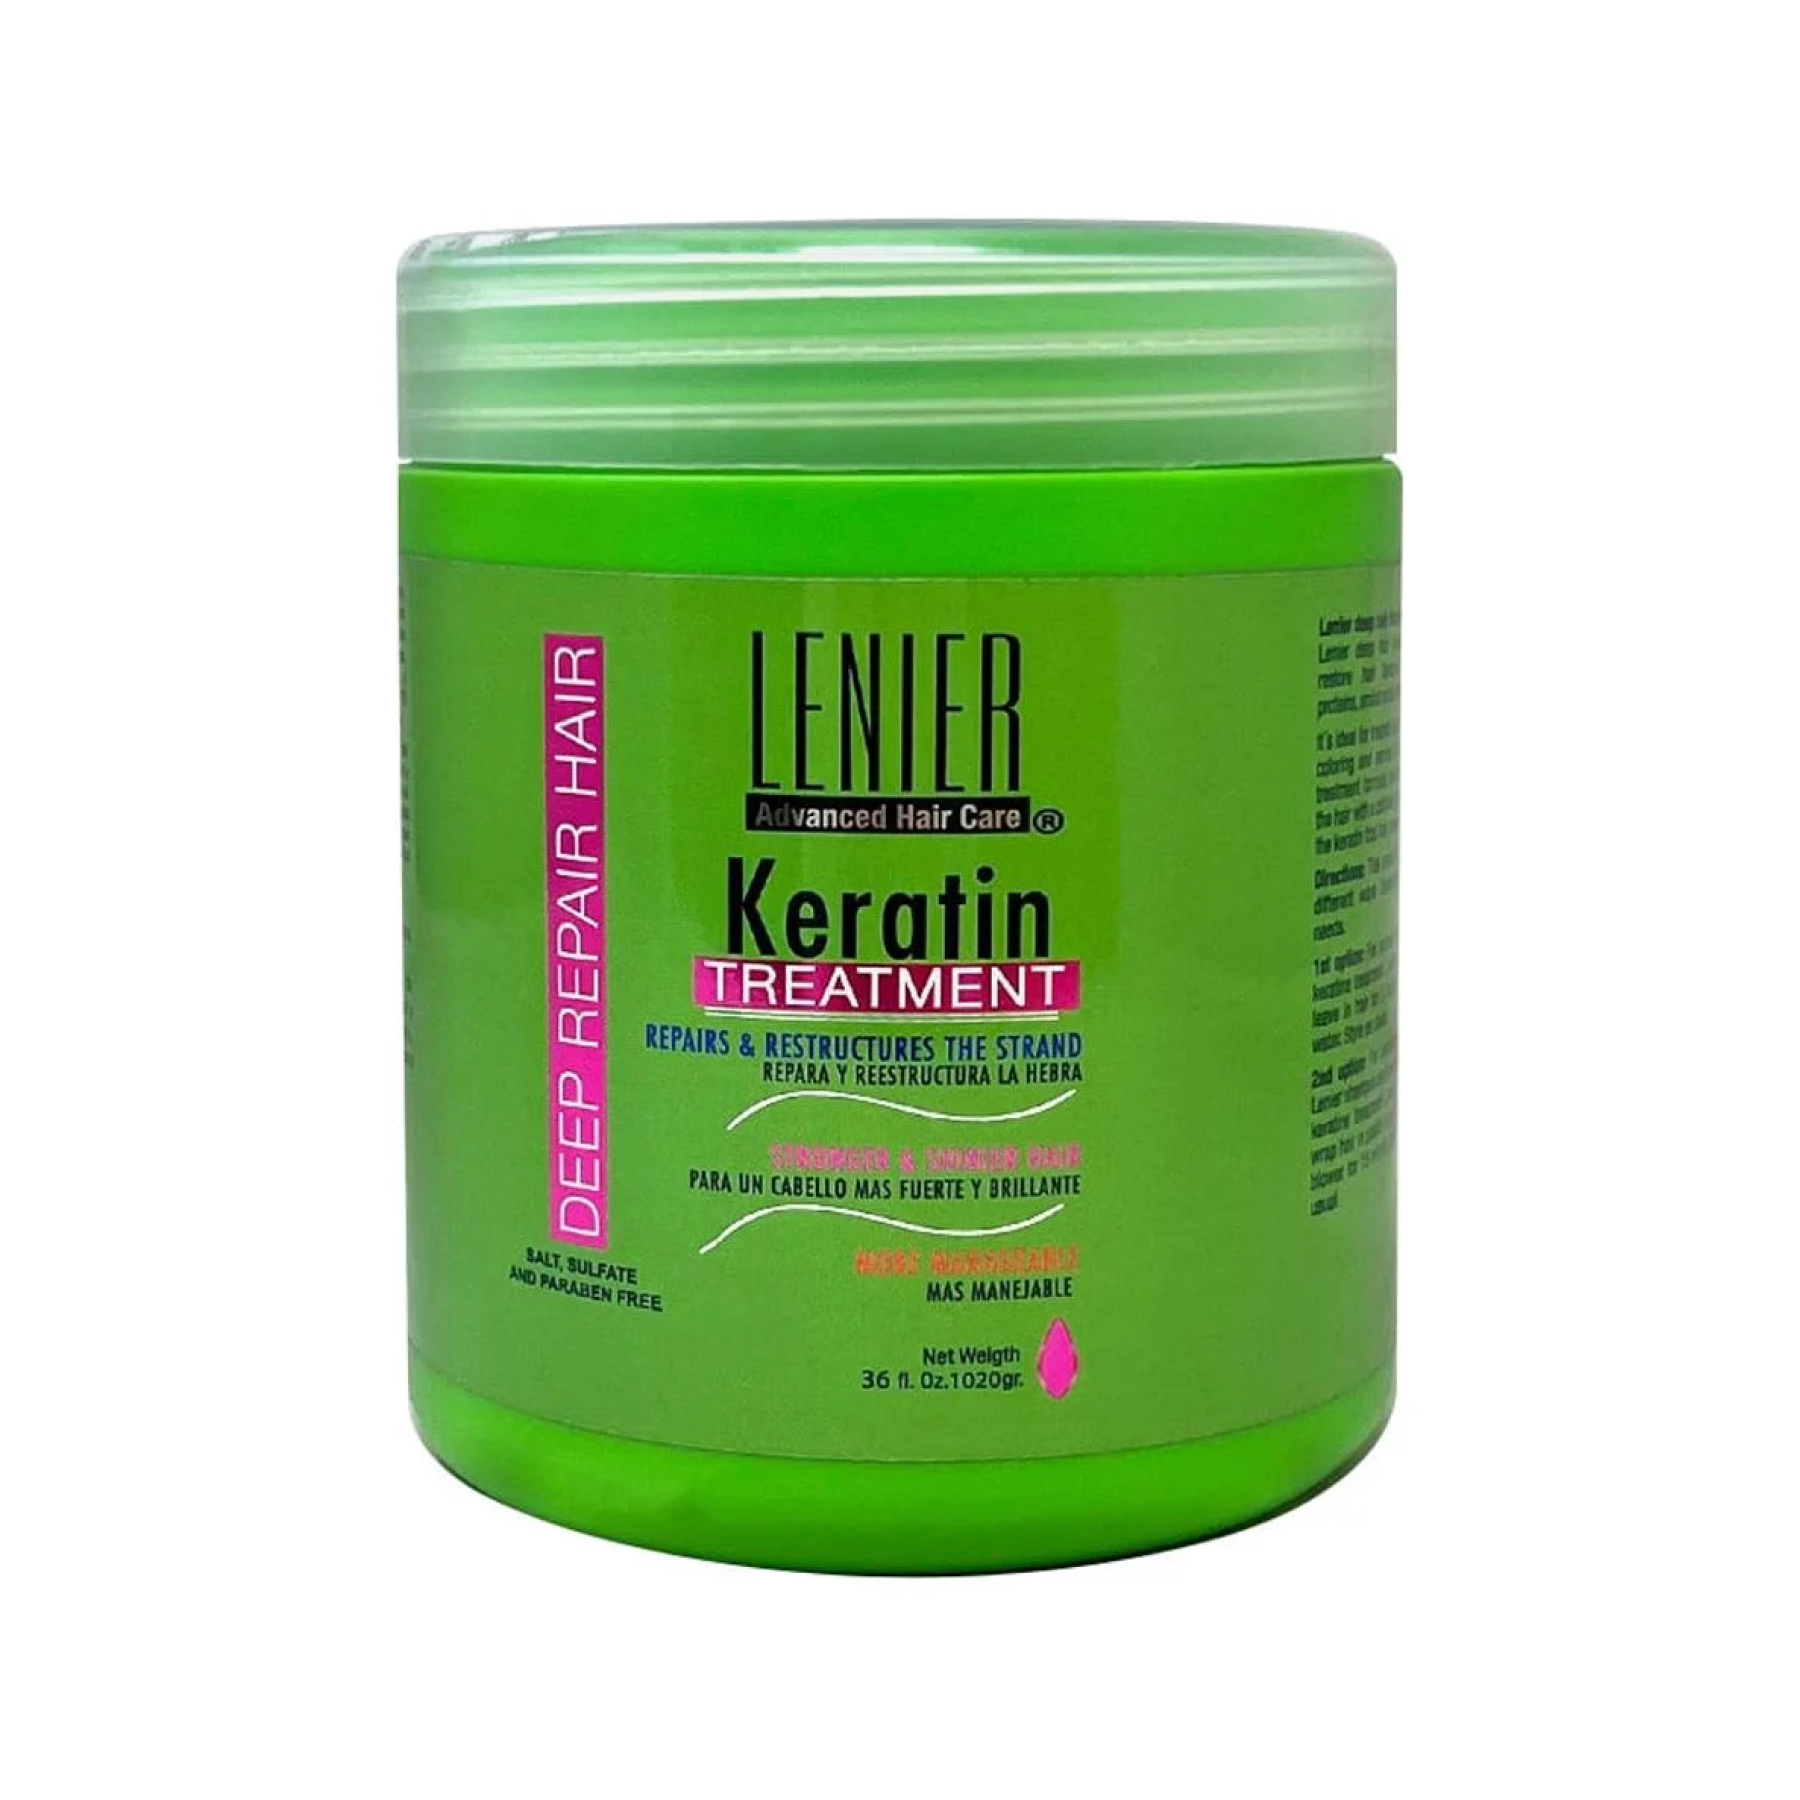 Lenier Keratine Treatment 36 oz